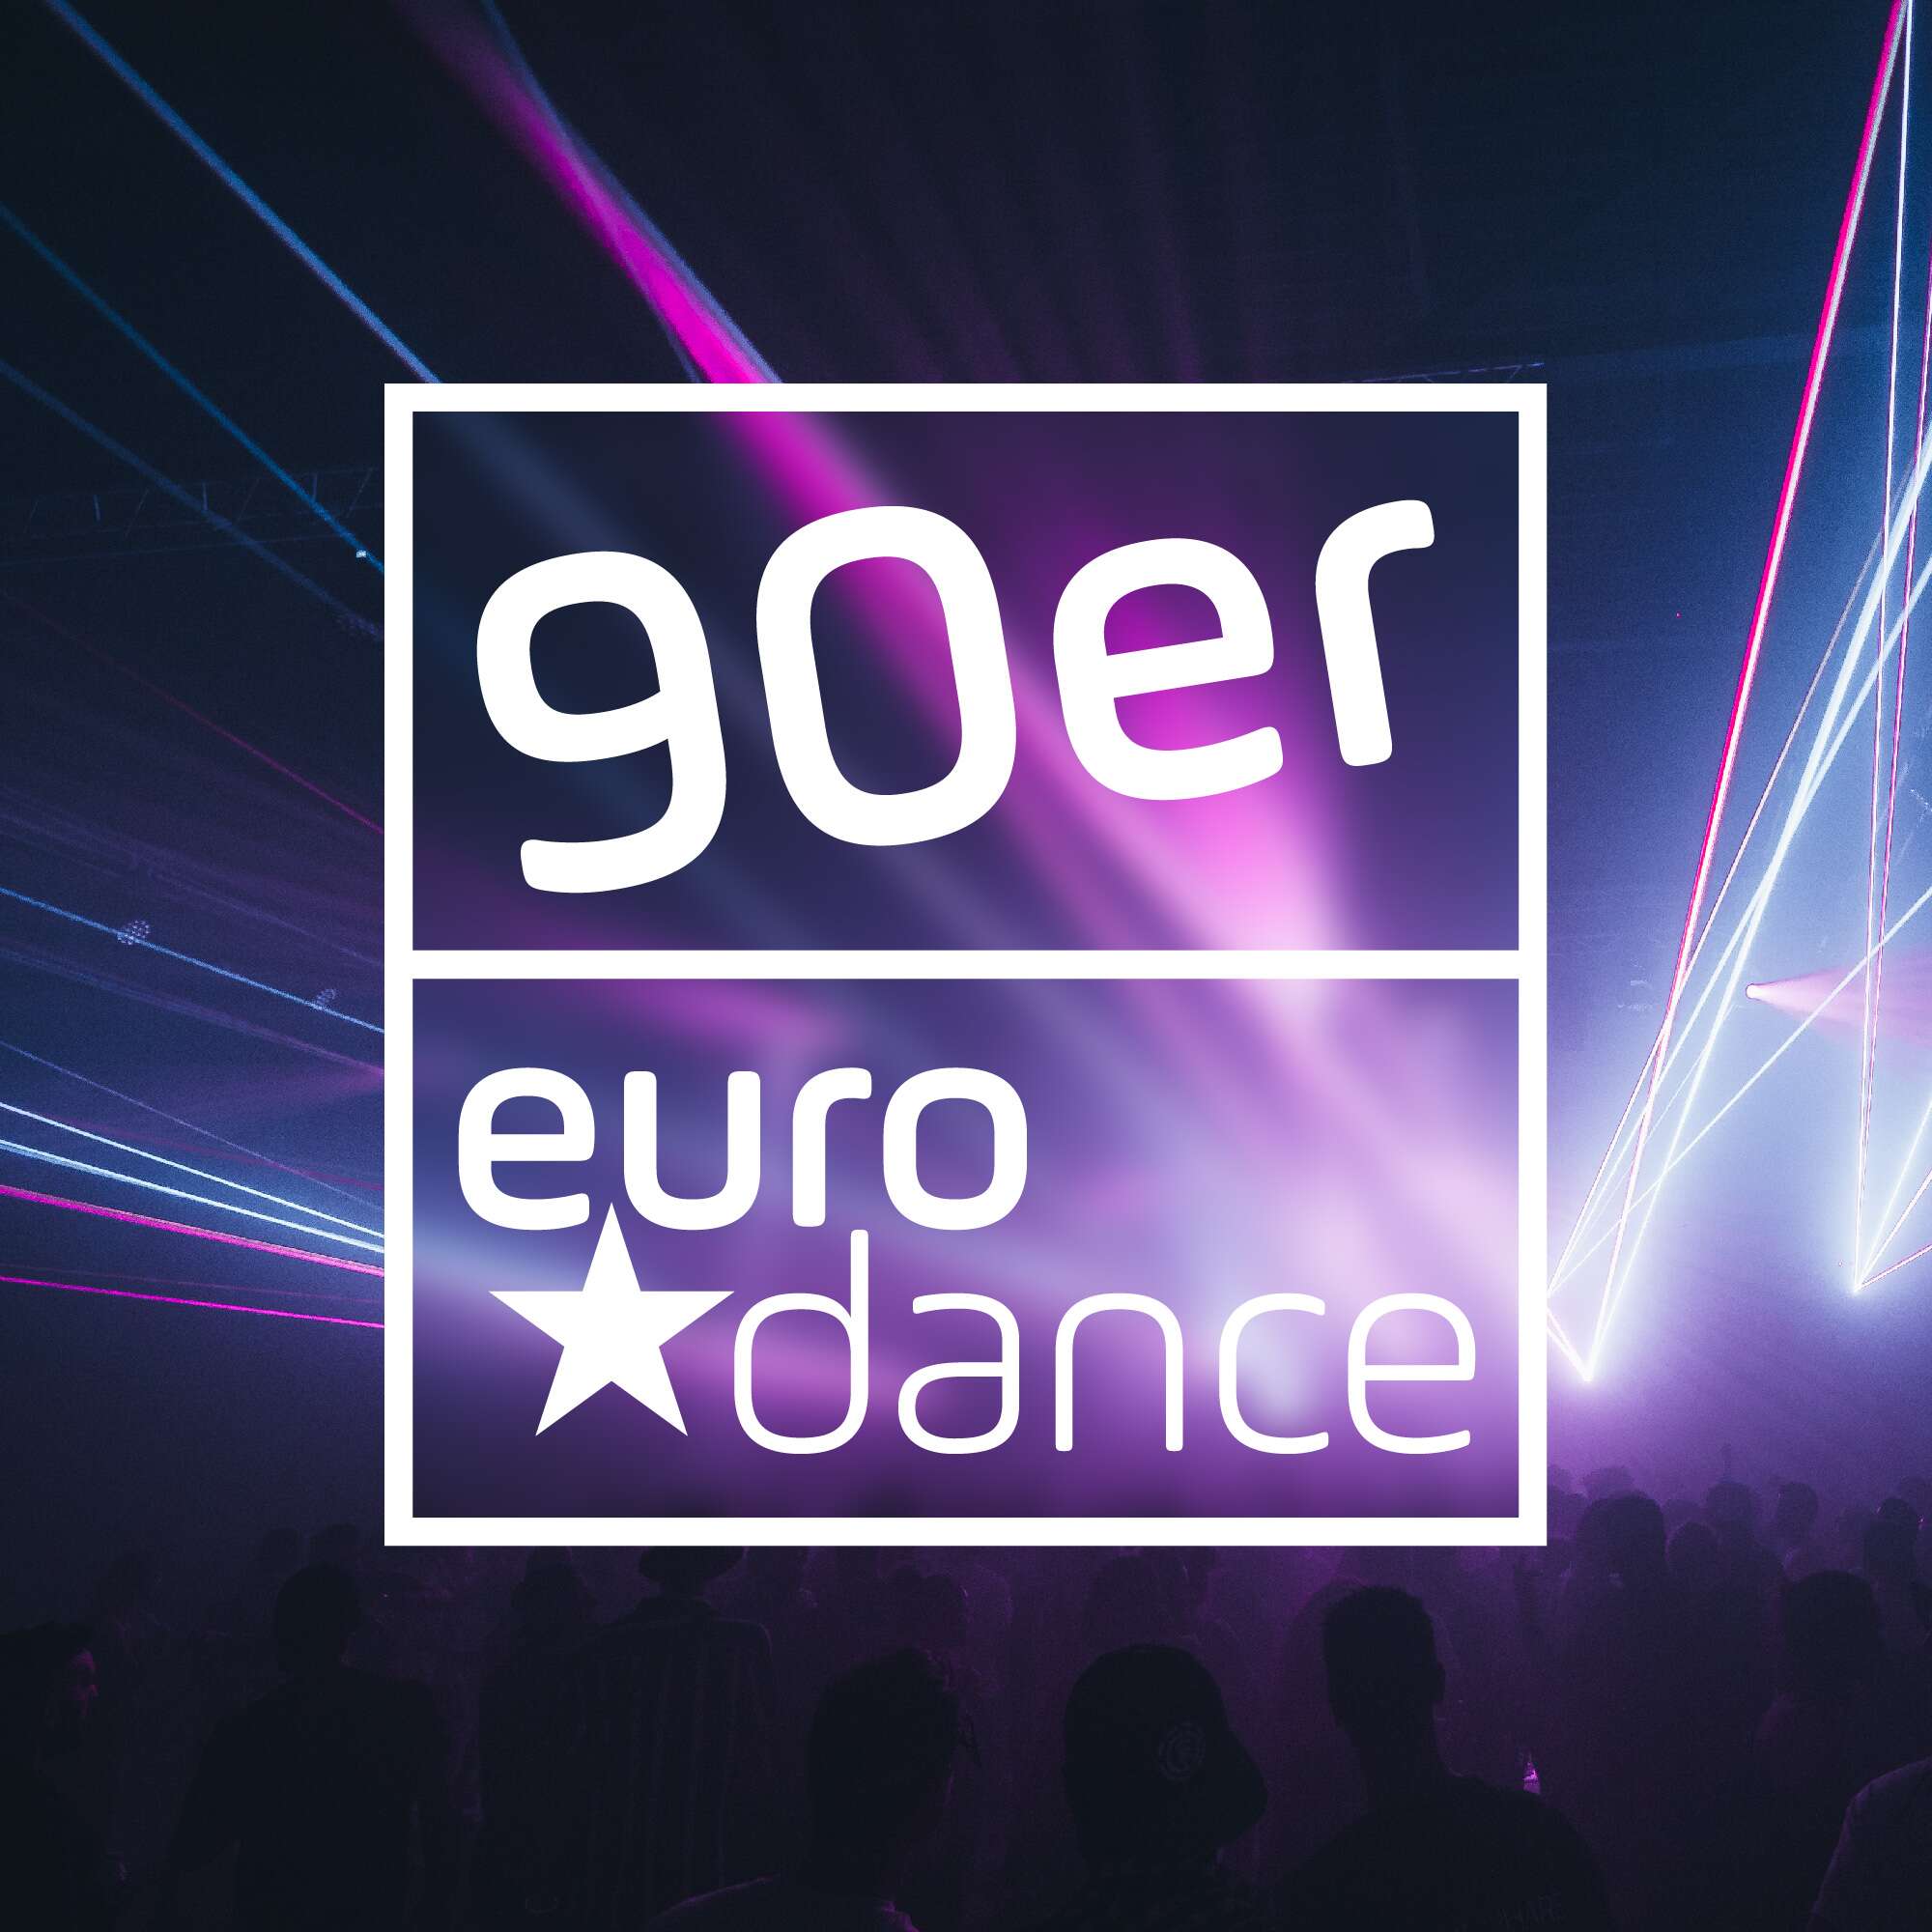 90er-Eurodance-Logo